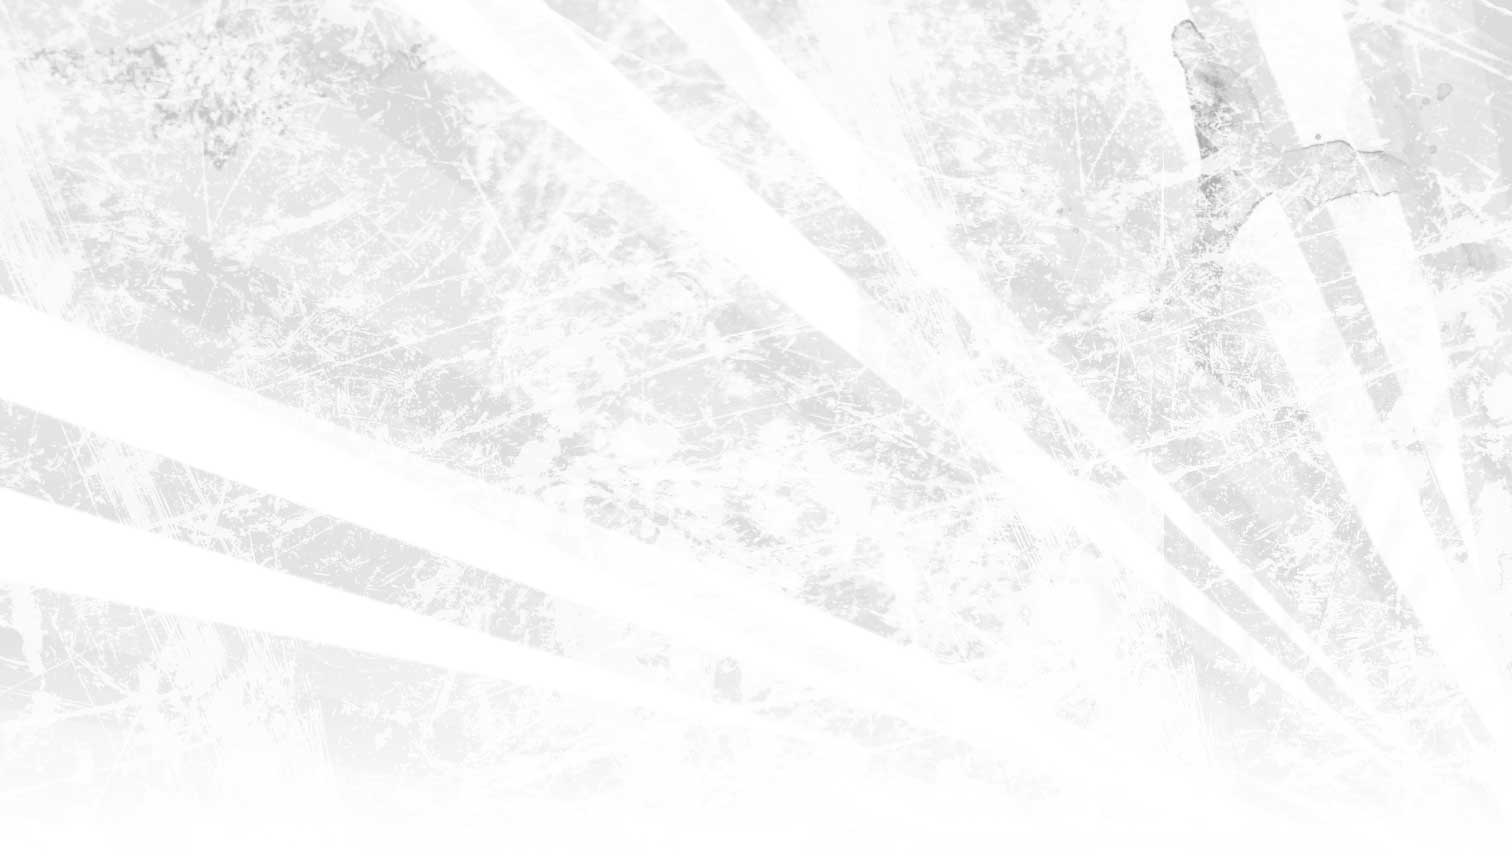 Wallpaper Cave trên Photoshop mang đến cho bạn những mẫu hình nền trắng tuyệt đẹp và đa dạng, giúp trang trí máy tính của bạn trở nên sinh động và thu hút hơn. Hãy xem ngay những hình ảnh liên quan để khám phá và tải về.